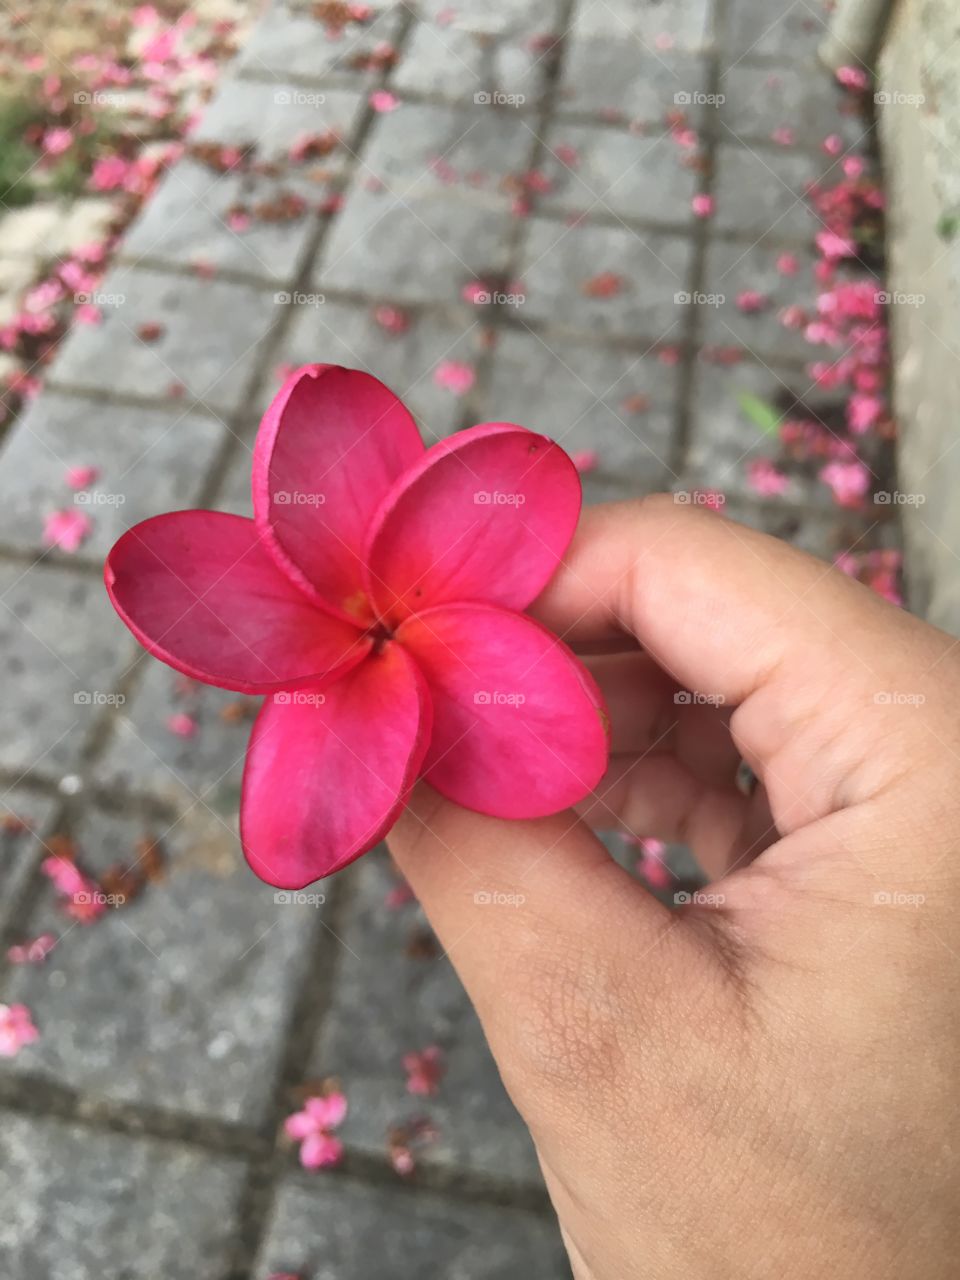 A flower!